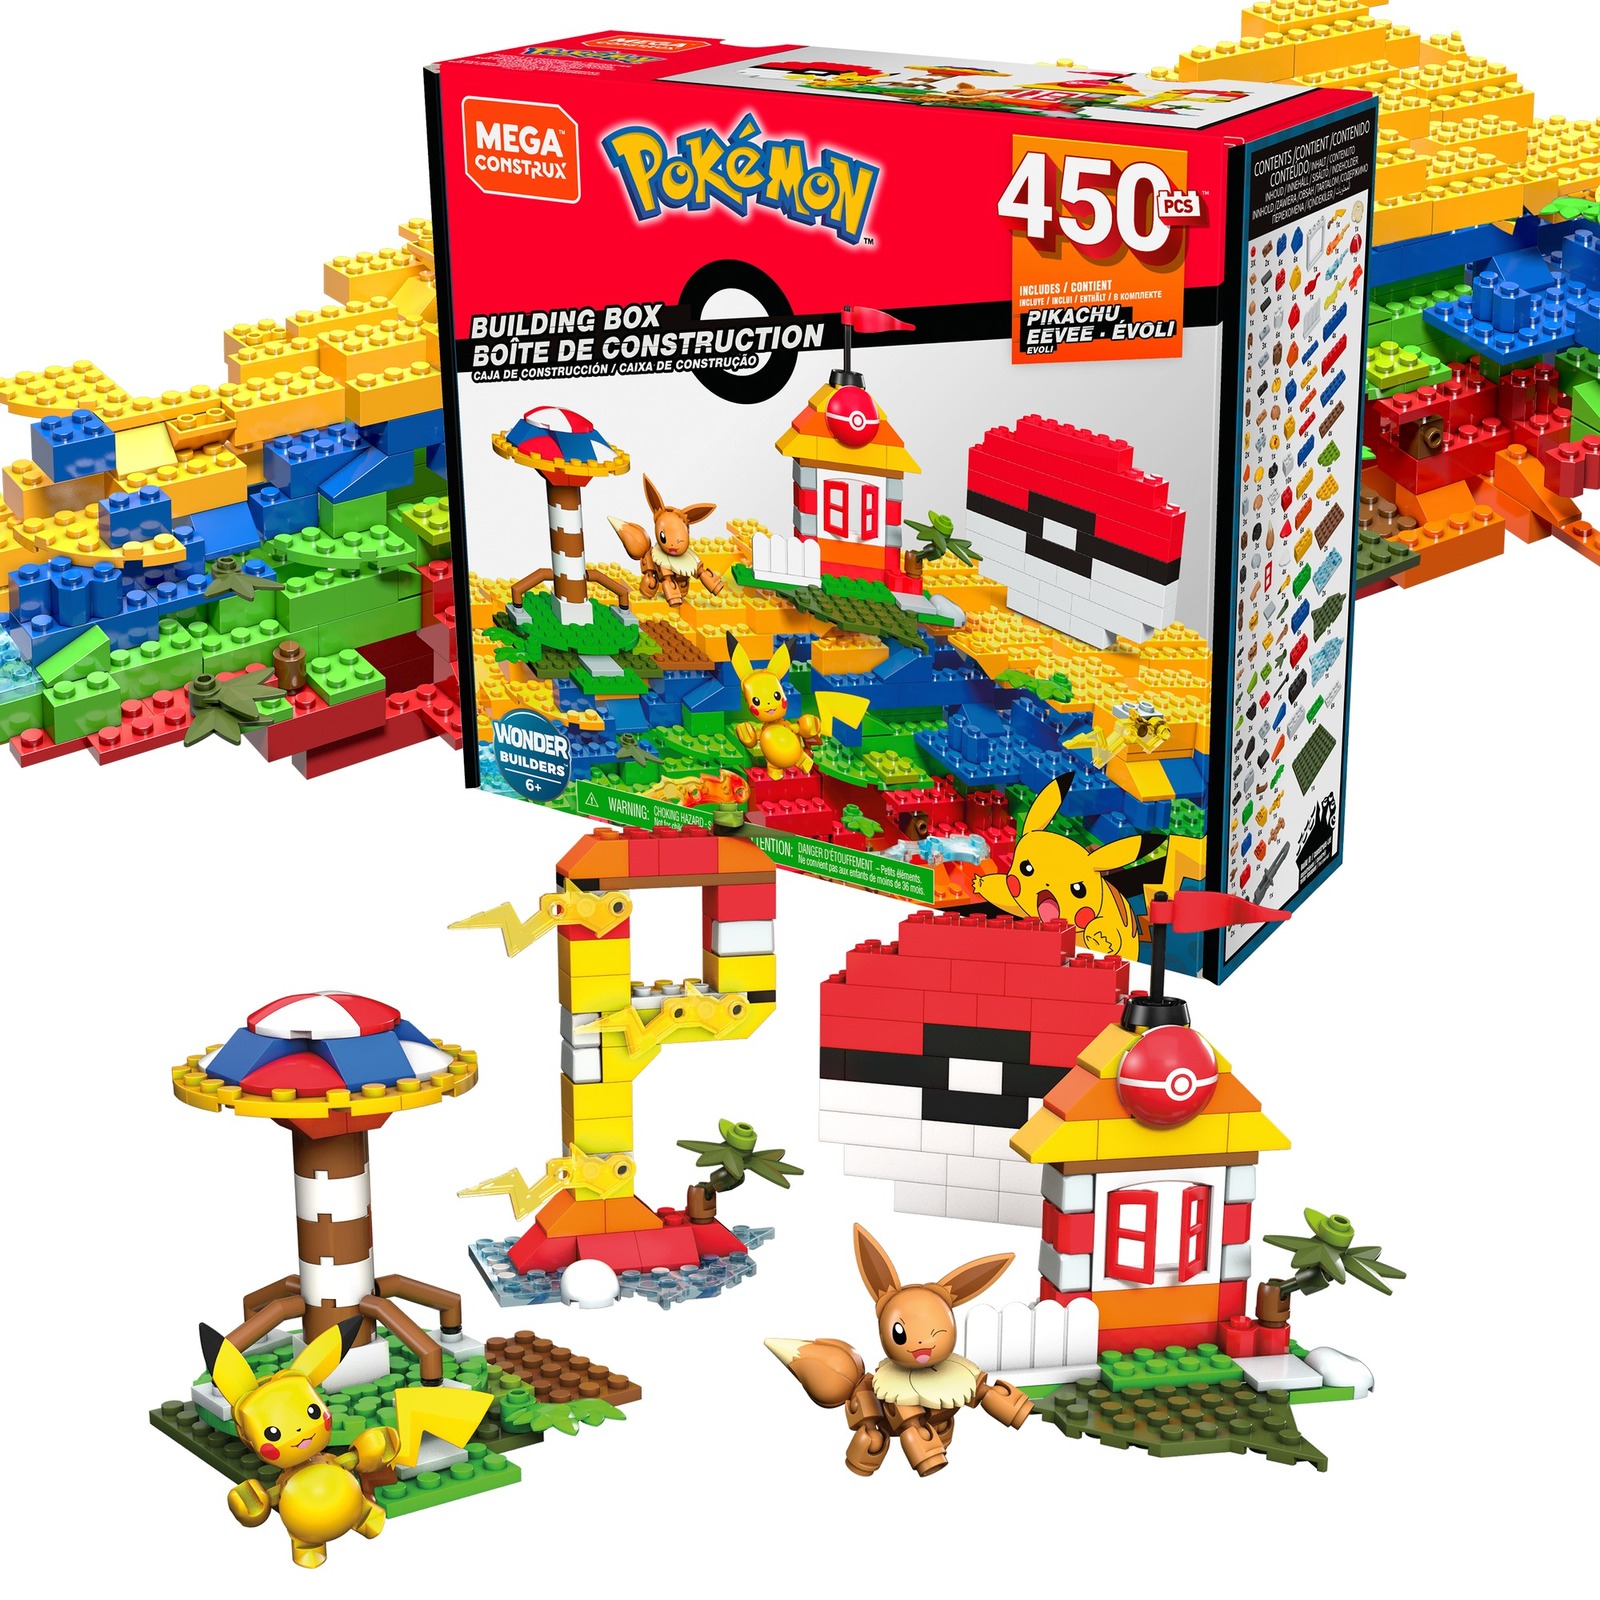 Mega Construx Pokemon Building Box Construction Set Toys for Kids (450 Pieces)